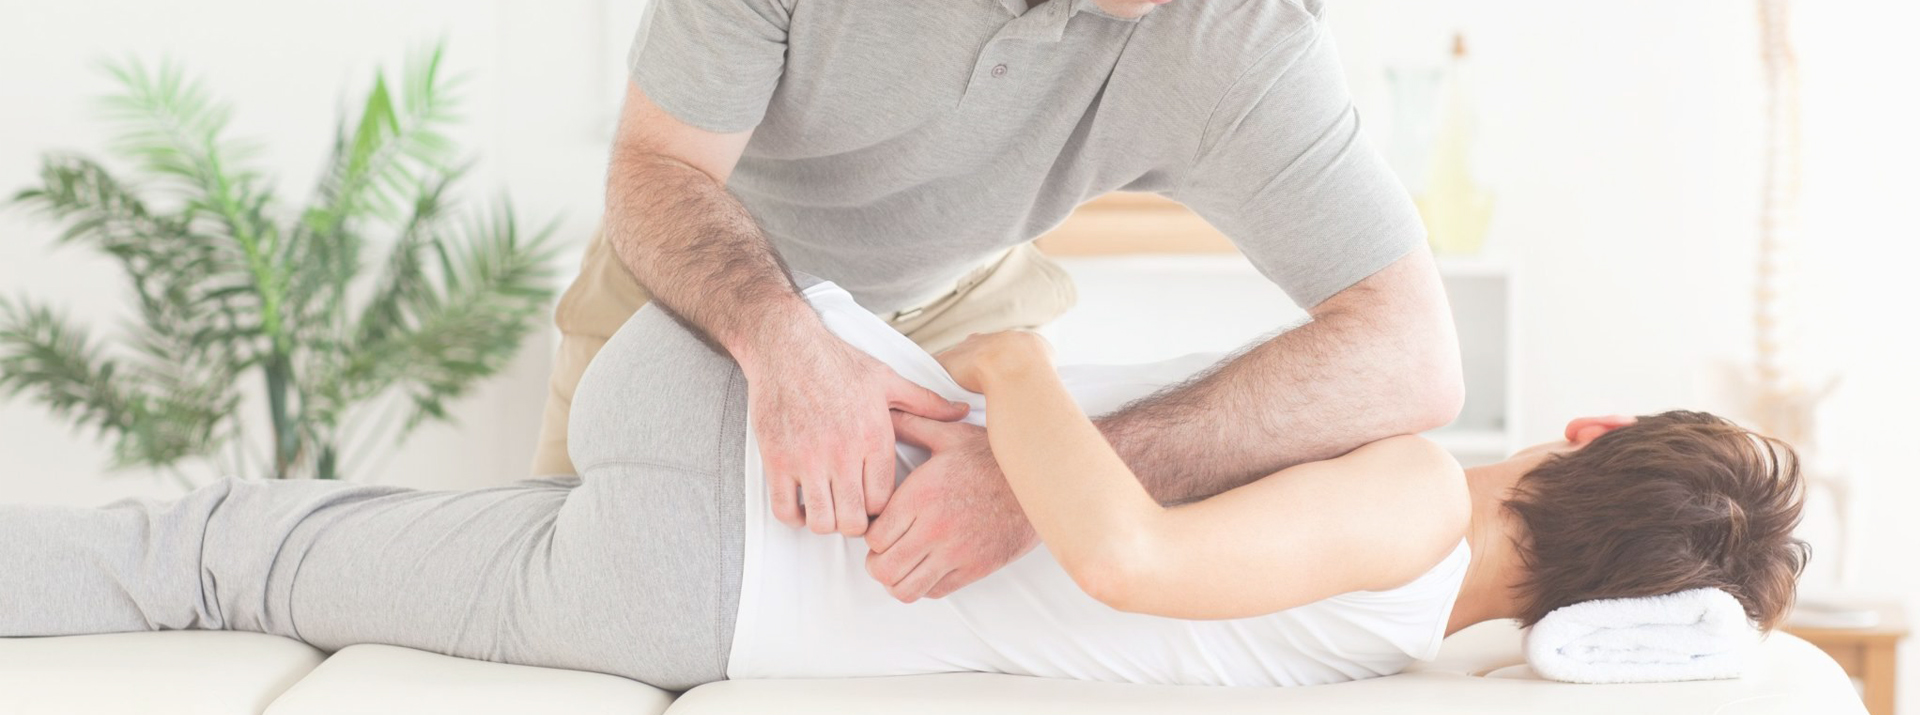 Behandeling van patiënten met klachten aan de wervelkolom en de gewrichten in armen en benen.